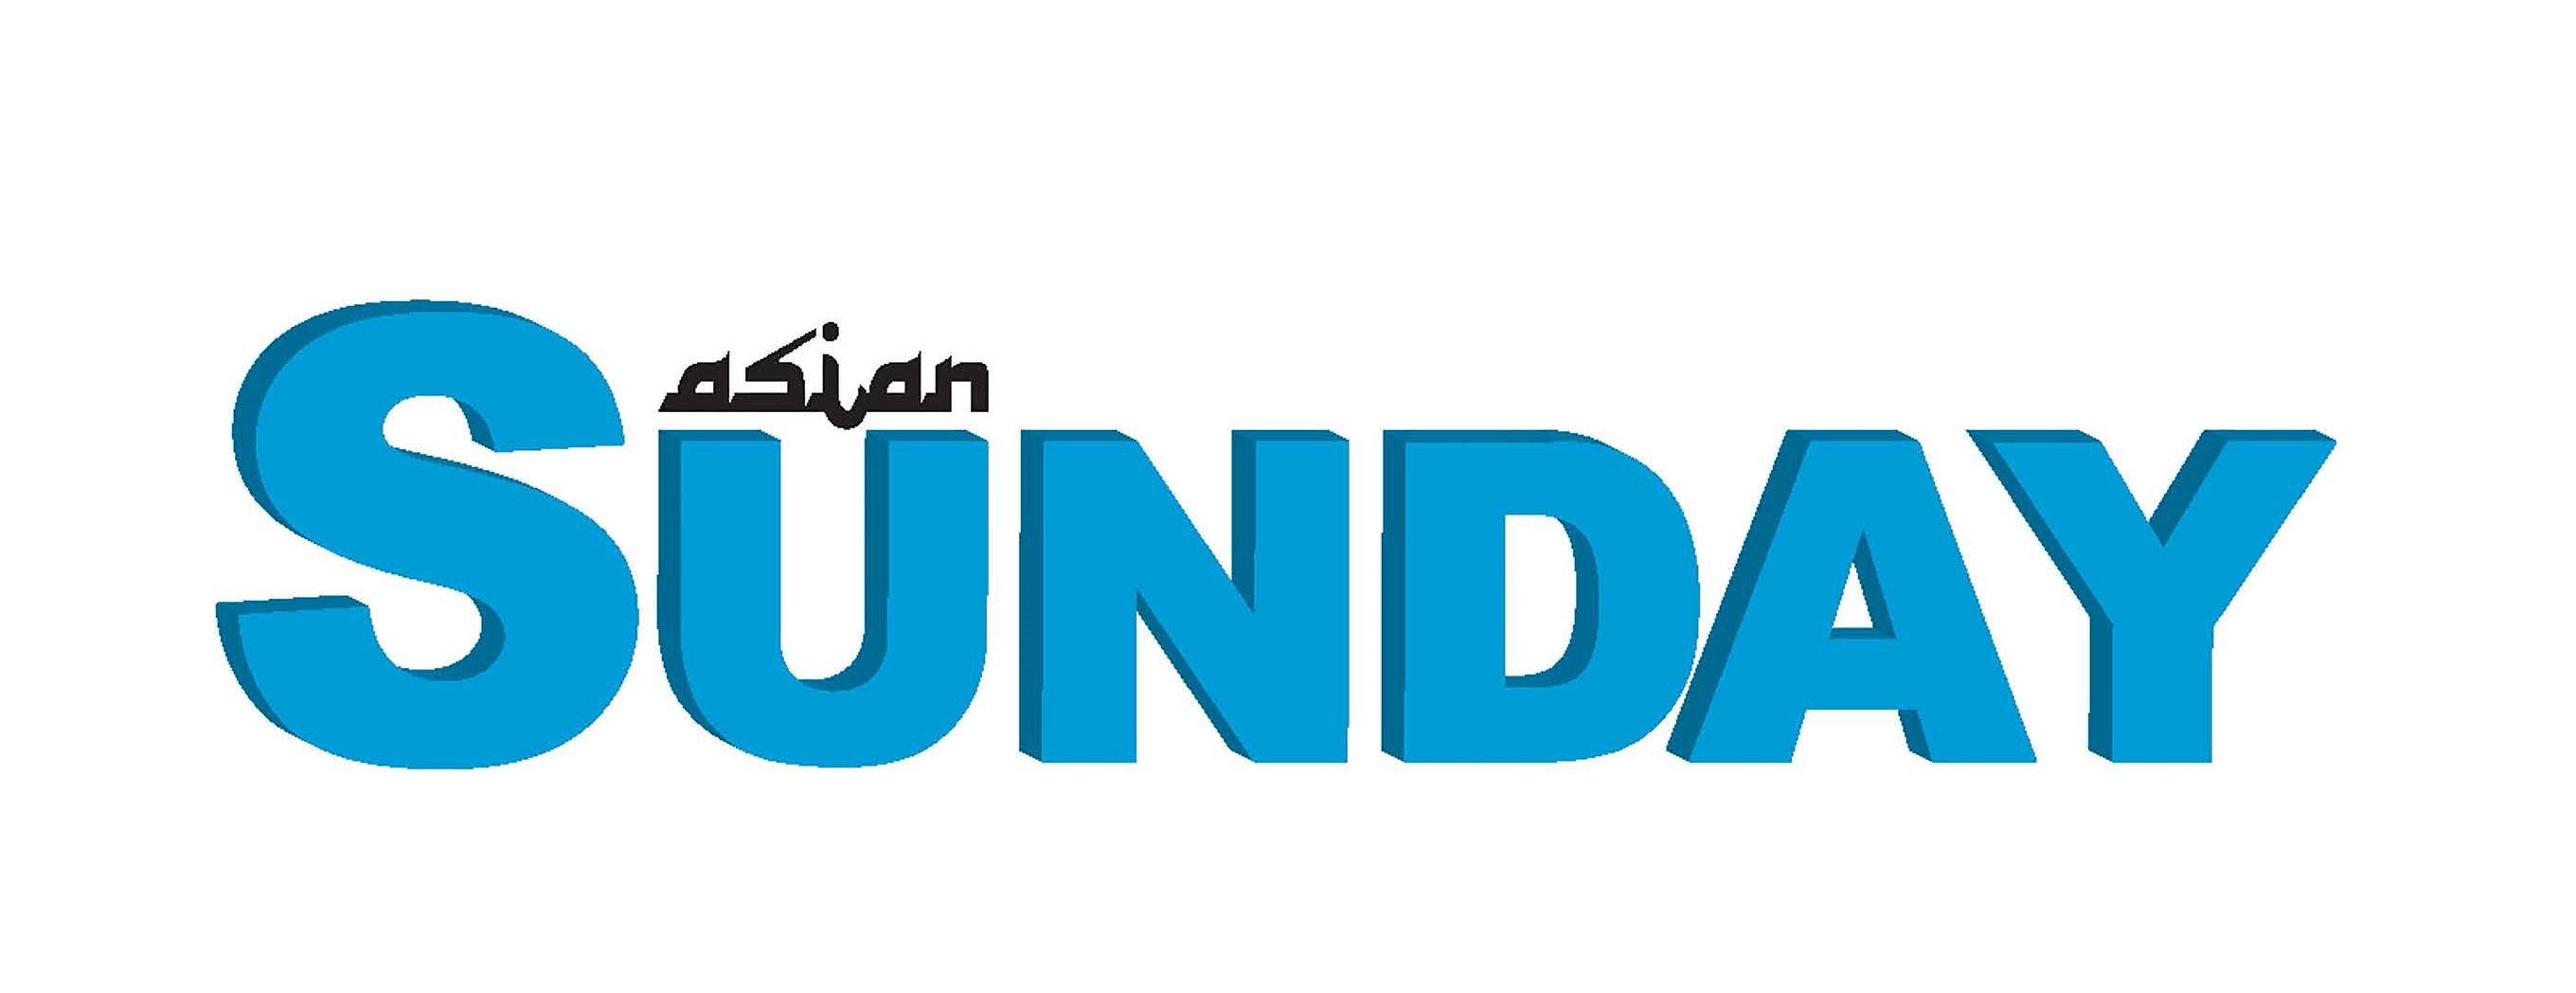 Sunday Logo - Asian Sunday logo only | Asian Sunday Newspaper